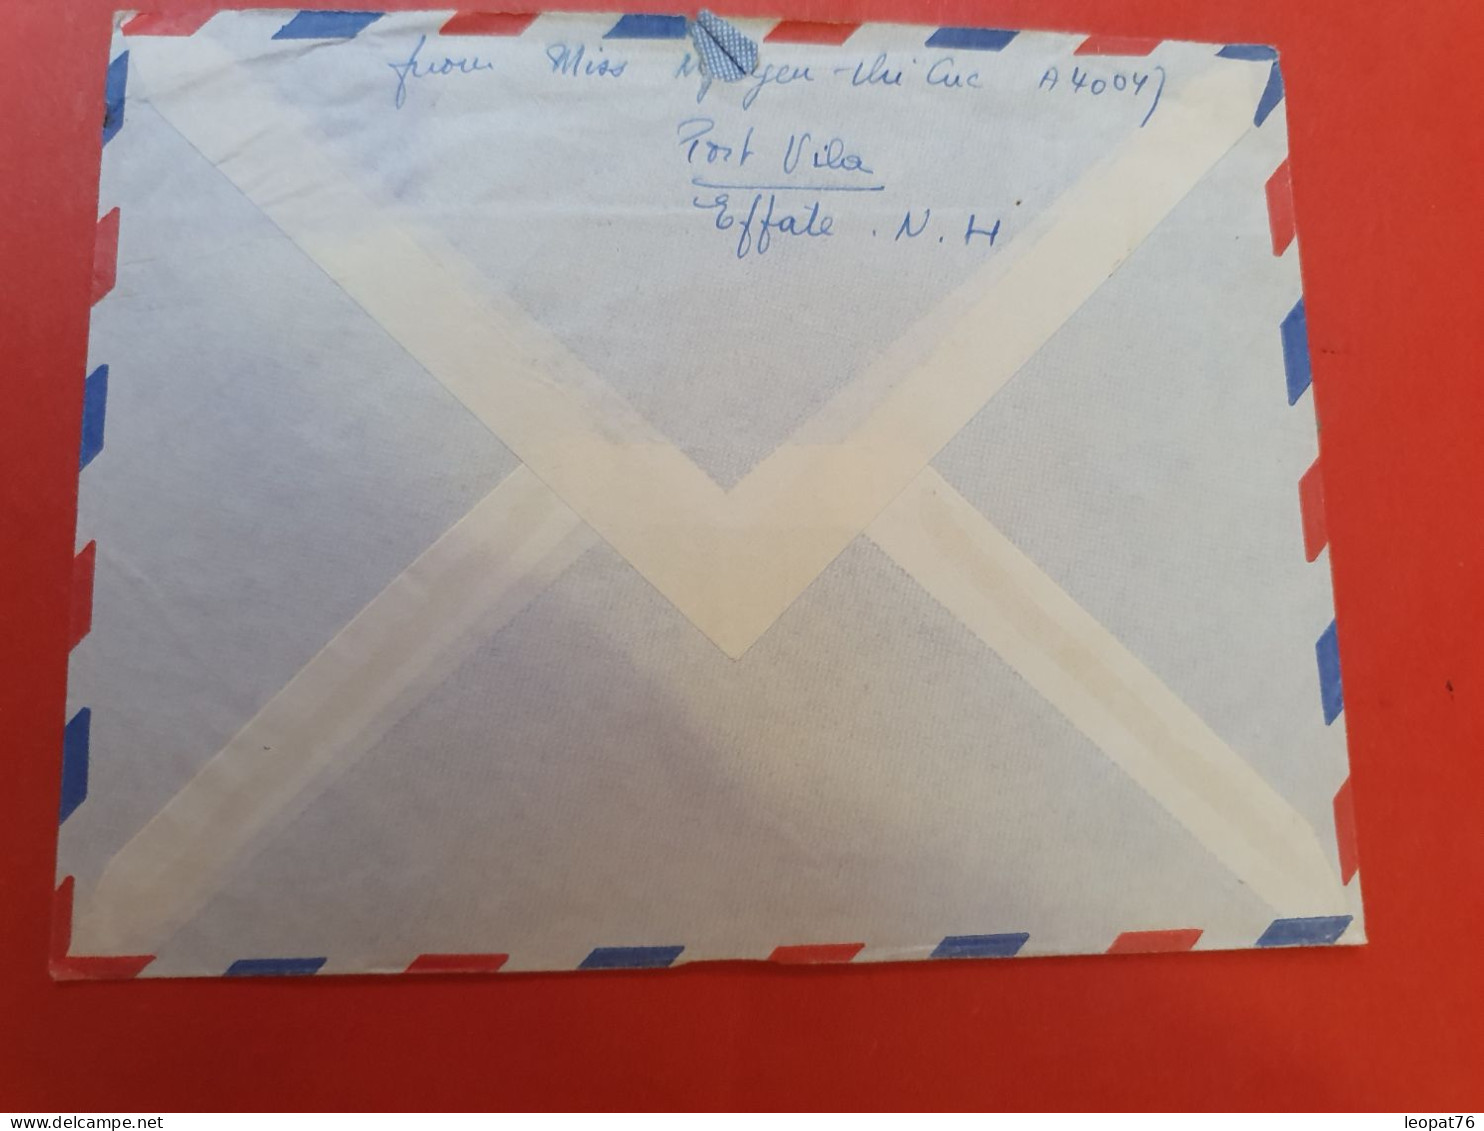 Nouvelle Hébrides - Enveloppe De Port Vila Pour Les USA En 1975 - D 270 - Lettres & Documents